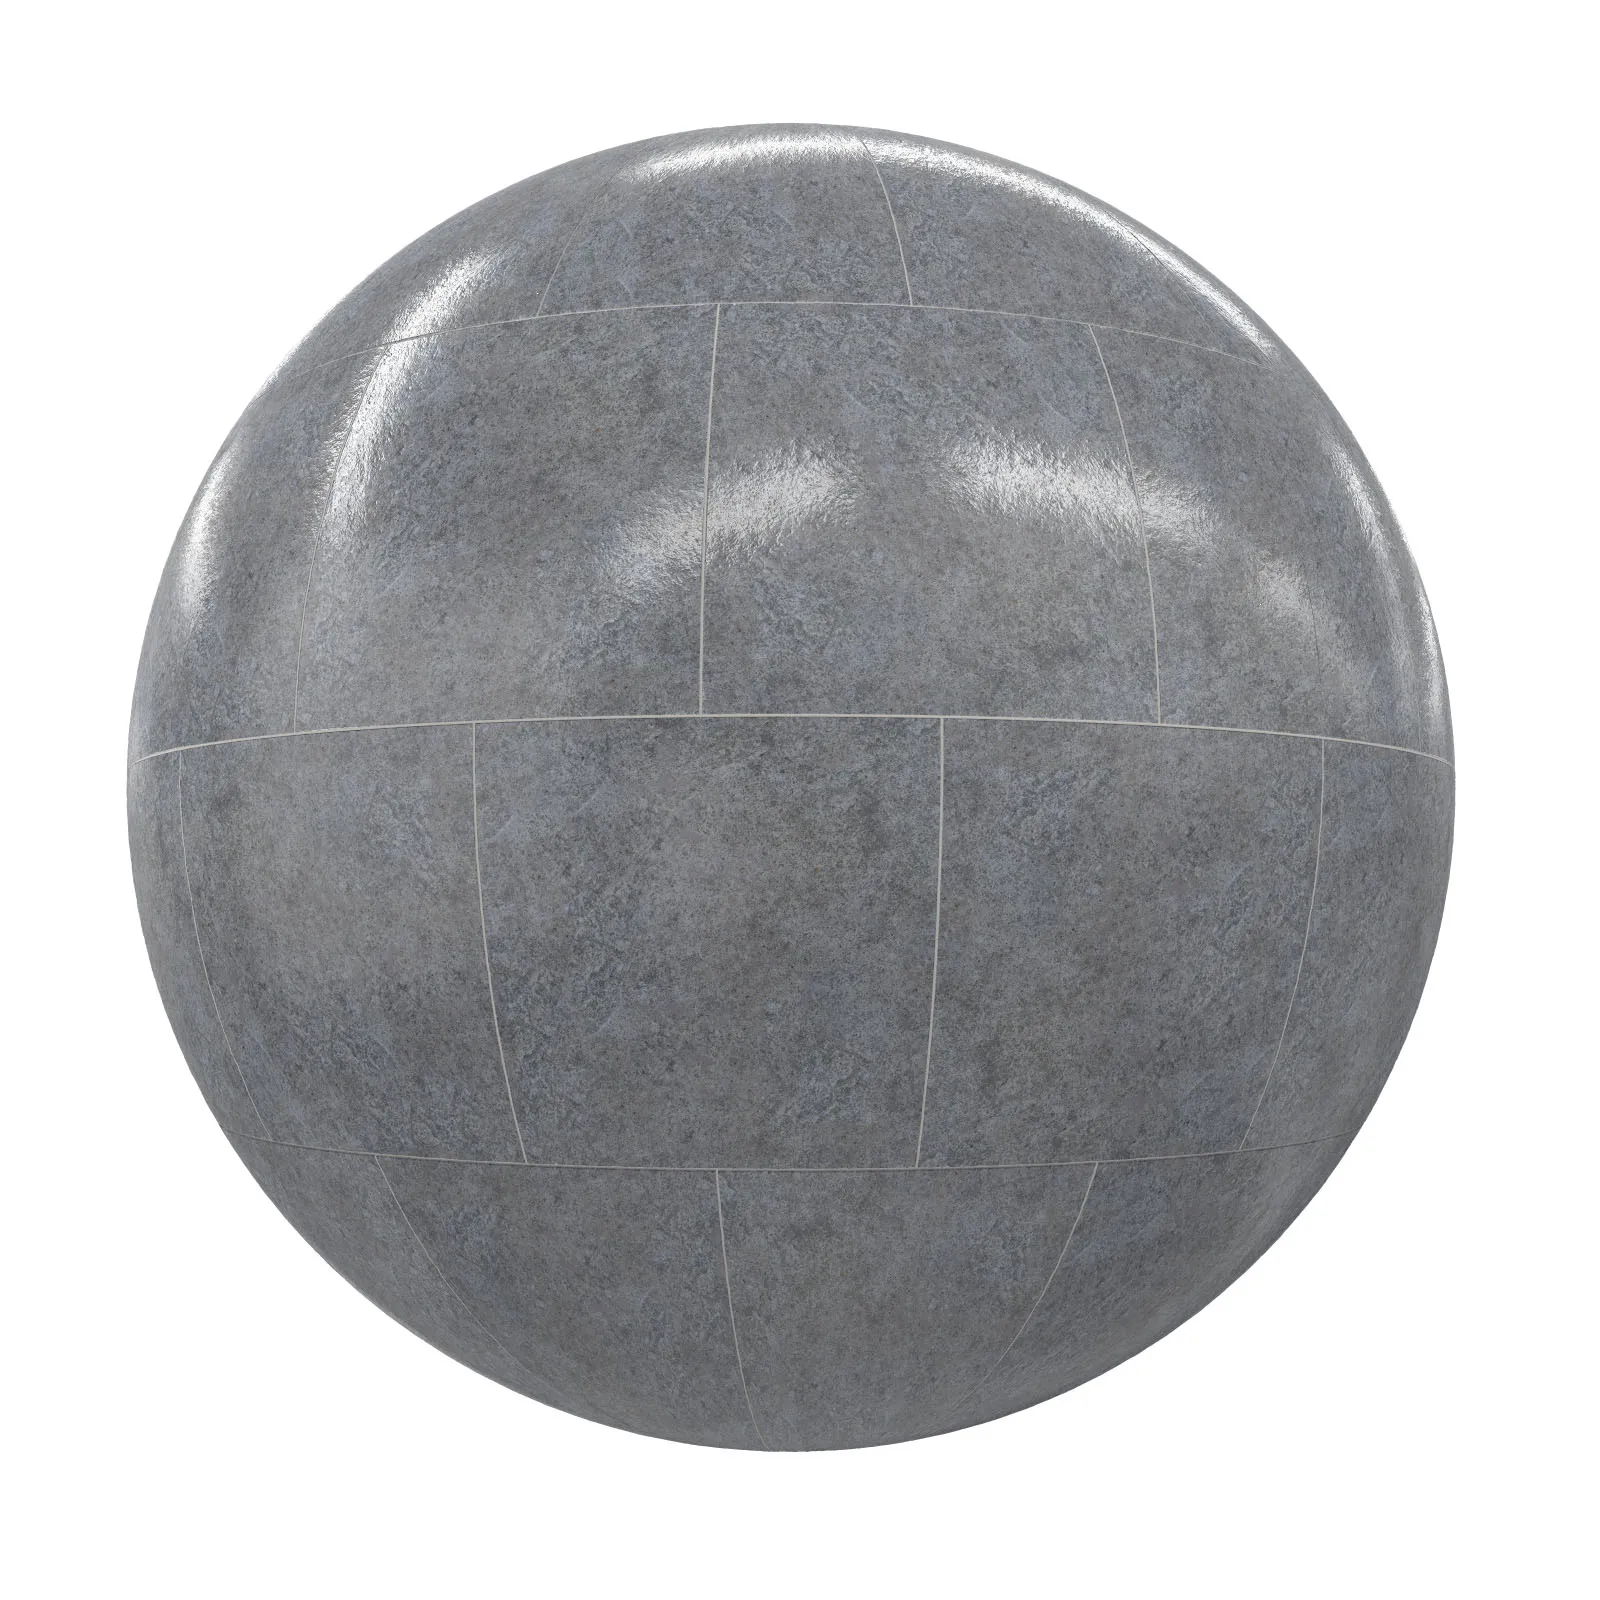 PBR CGAXIS TEXTURES – TILES – Grey Tiles 9